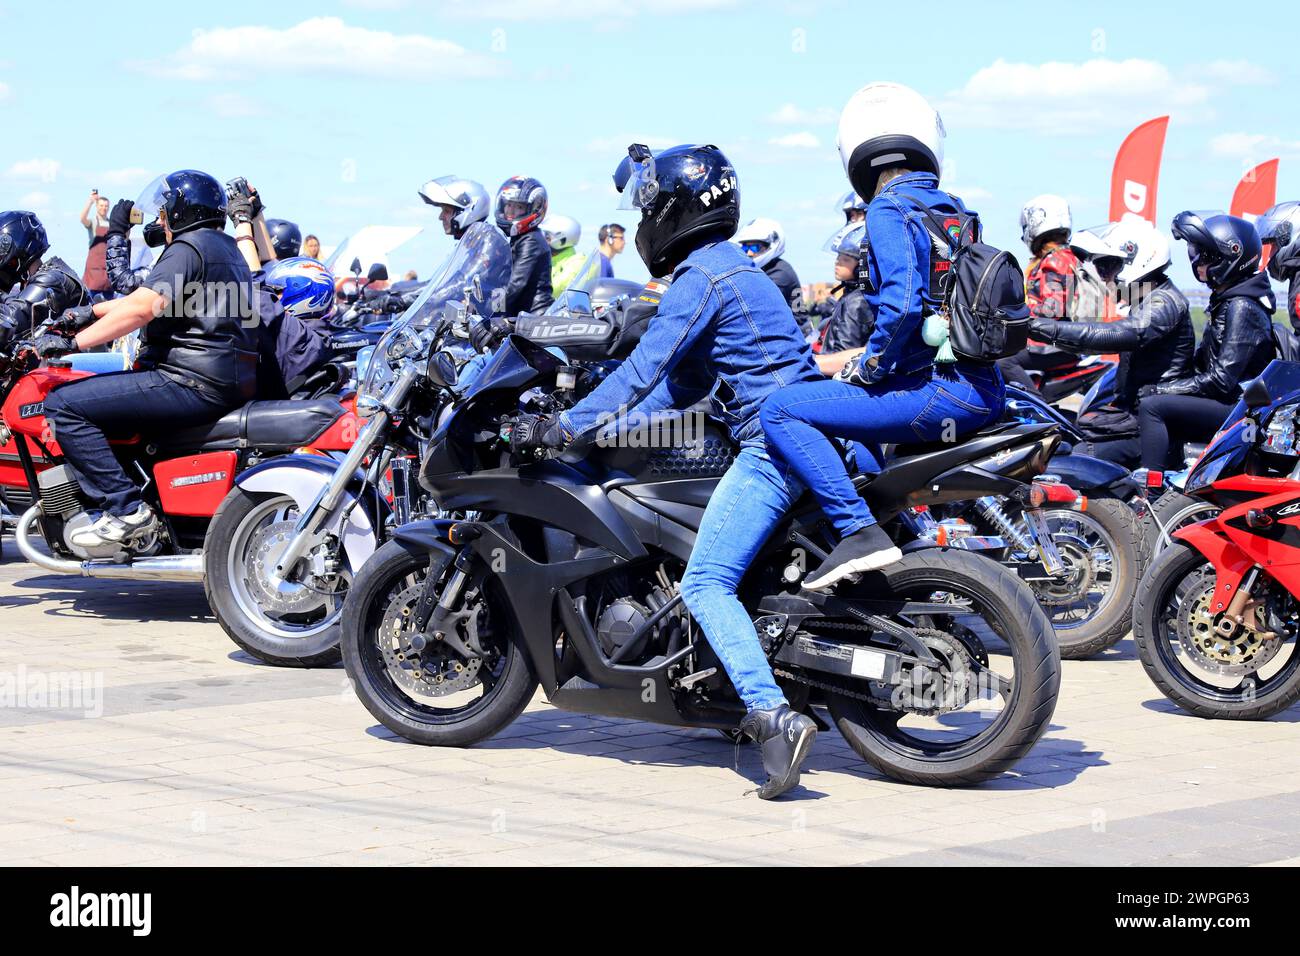 Motocyclistes sur motos fraîches, dans des casques et des vestes en cuir, roulent le long de la route, Motorsport Dnepr, Ukraine, 11 mai 2019. Banque D'Images